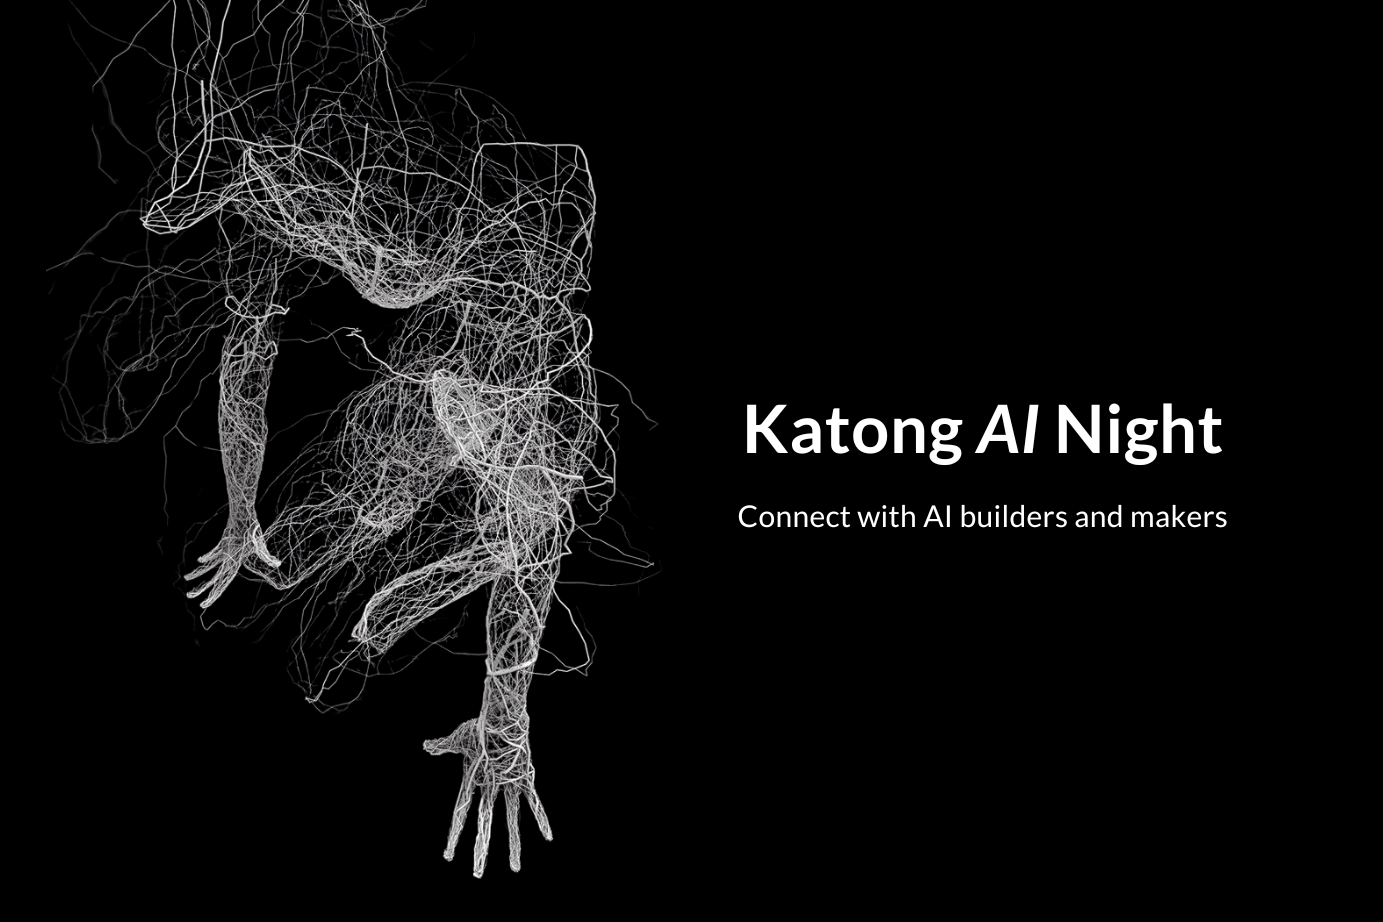 Katong AI Night